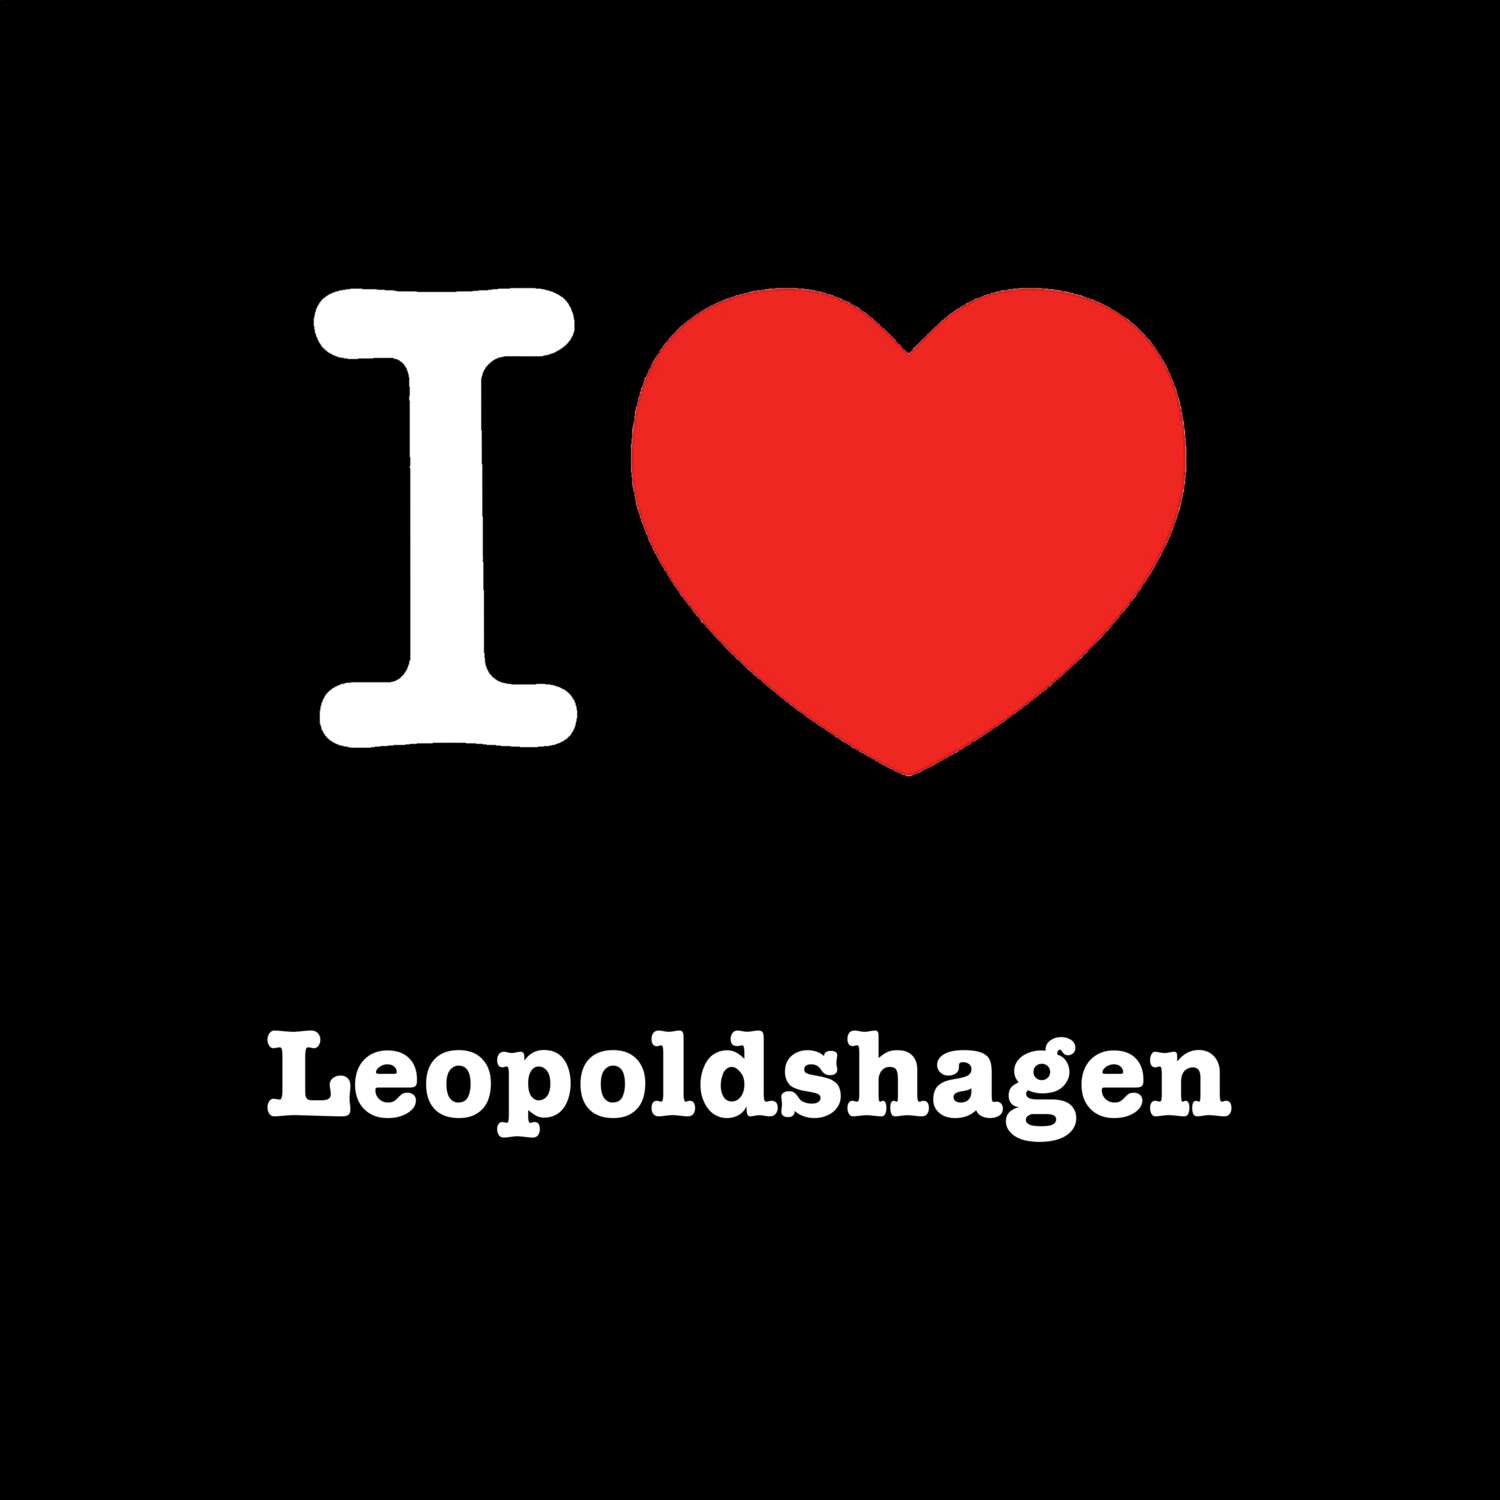 Leopoldshagen T-Shirt »I love«